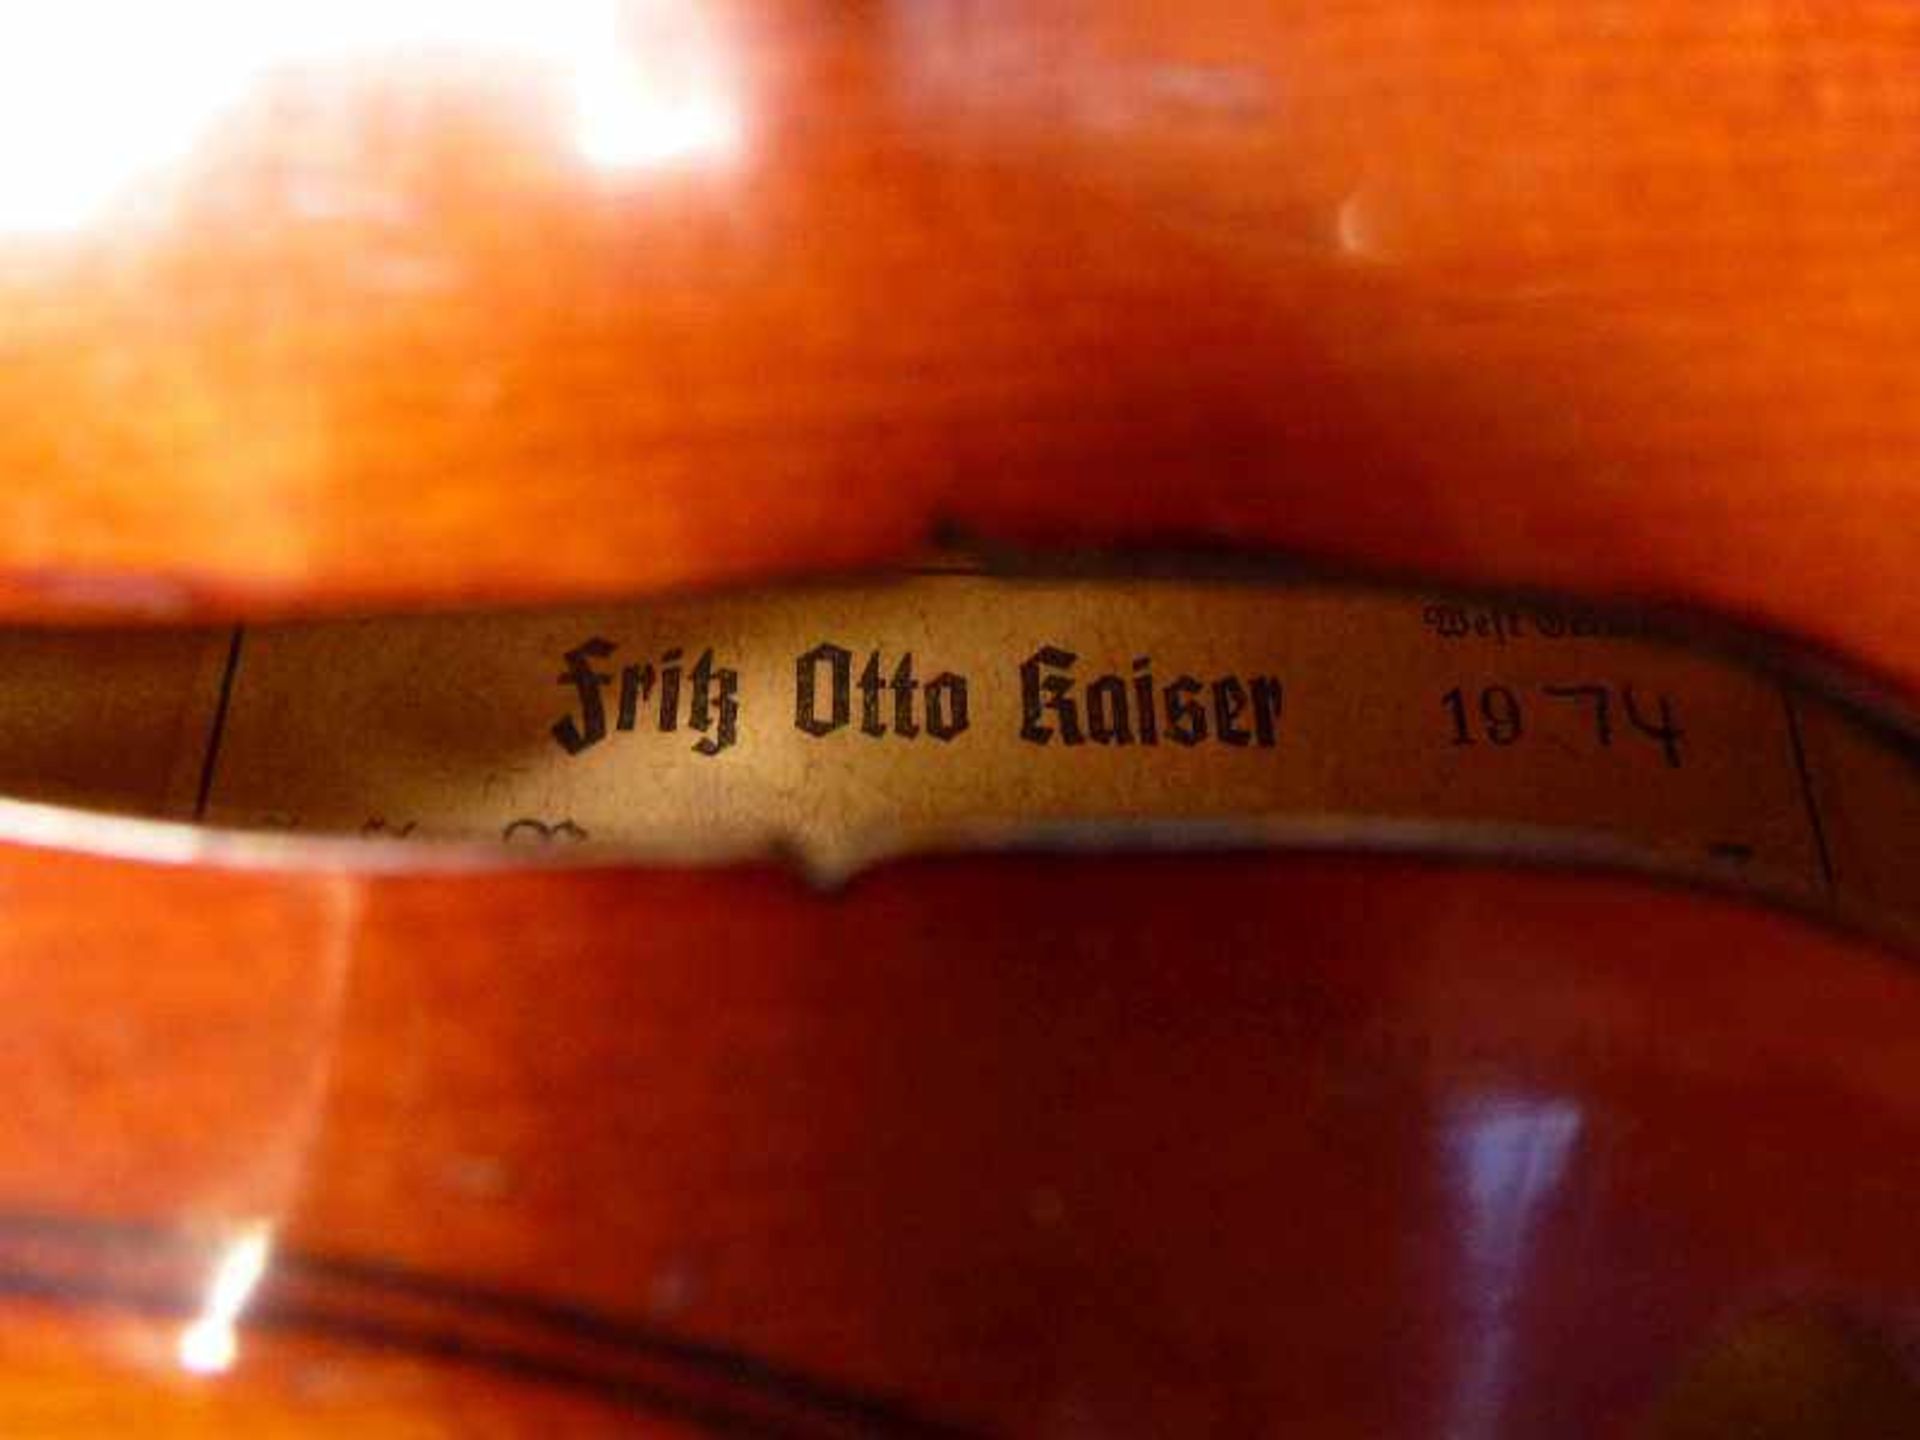 1/2 Geige, Fritz Otto Kayser, Erlangen Modell Nr. 93, Birke, restauriert, mit Bogen u. Koffer, L - Image 2 of 4